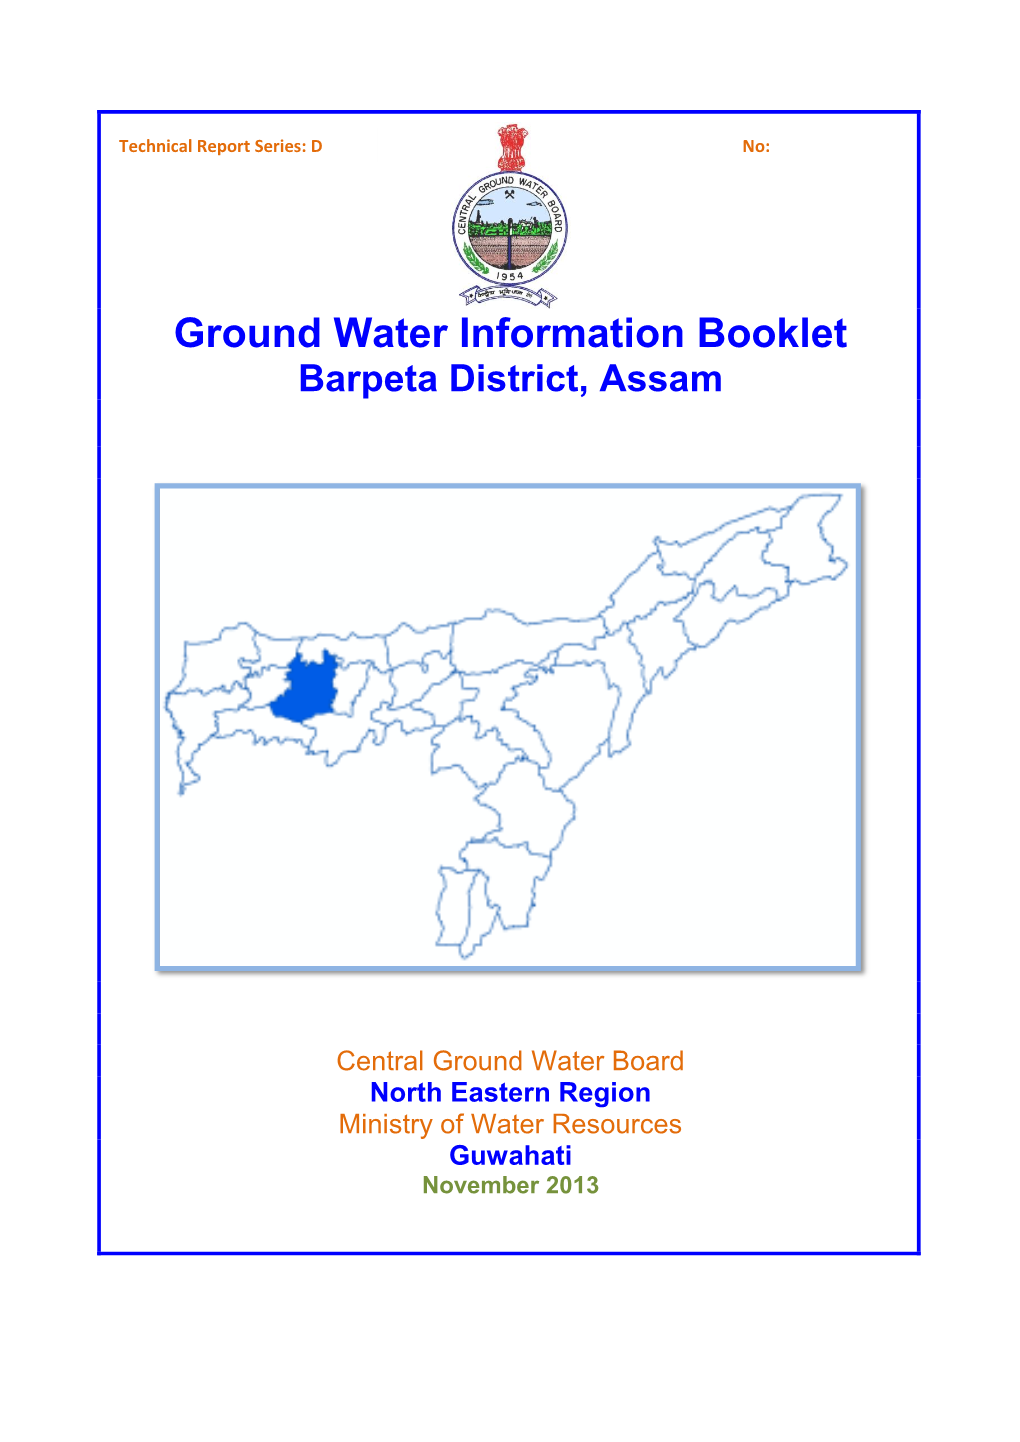 Barpeta District, Assam